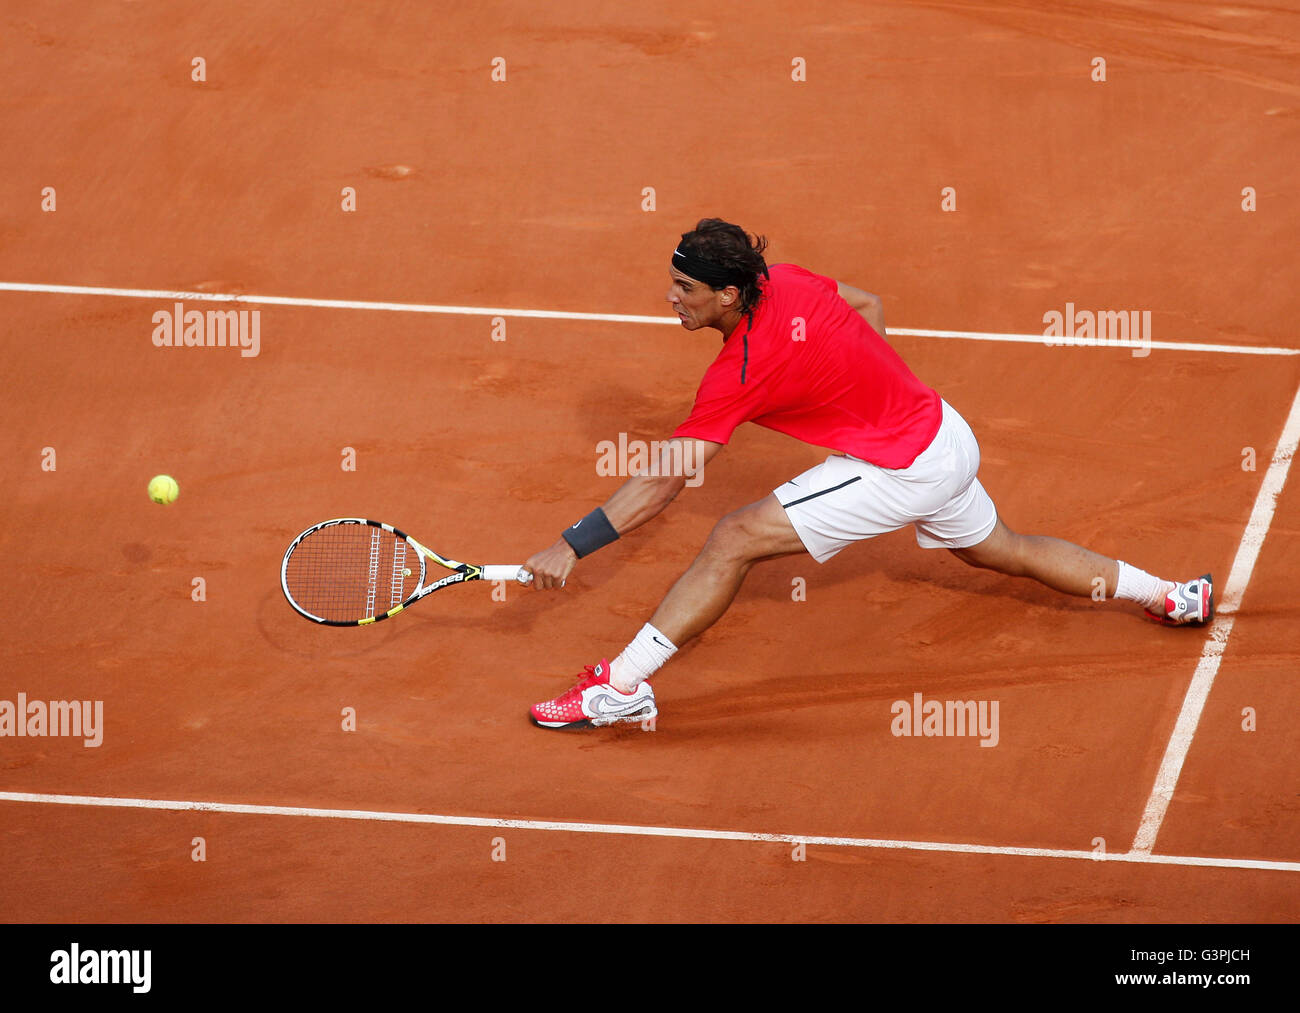 Rafael Nadal, ESP, Open de France 2012, tournoi du Grand Chelem de tennis de l'ITF, Roland Garros, Paris, France, Europe Banque D'Images